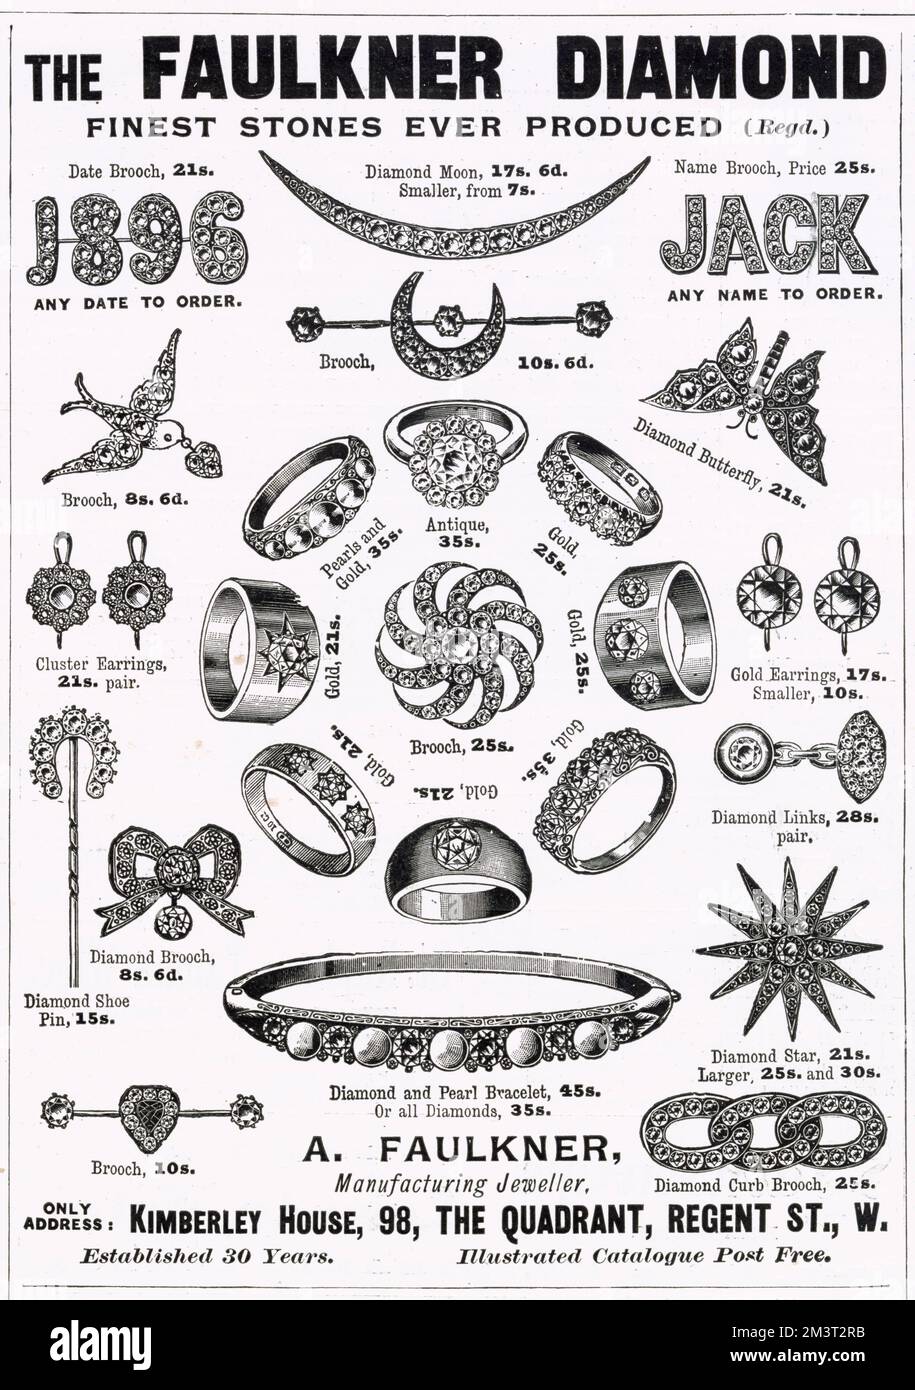 Werbung für Einen Faulkner, Juwelier - Schmuck von "The Faulkner Diamond". Datum: 1896 Stockfoto